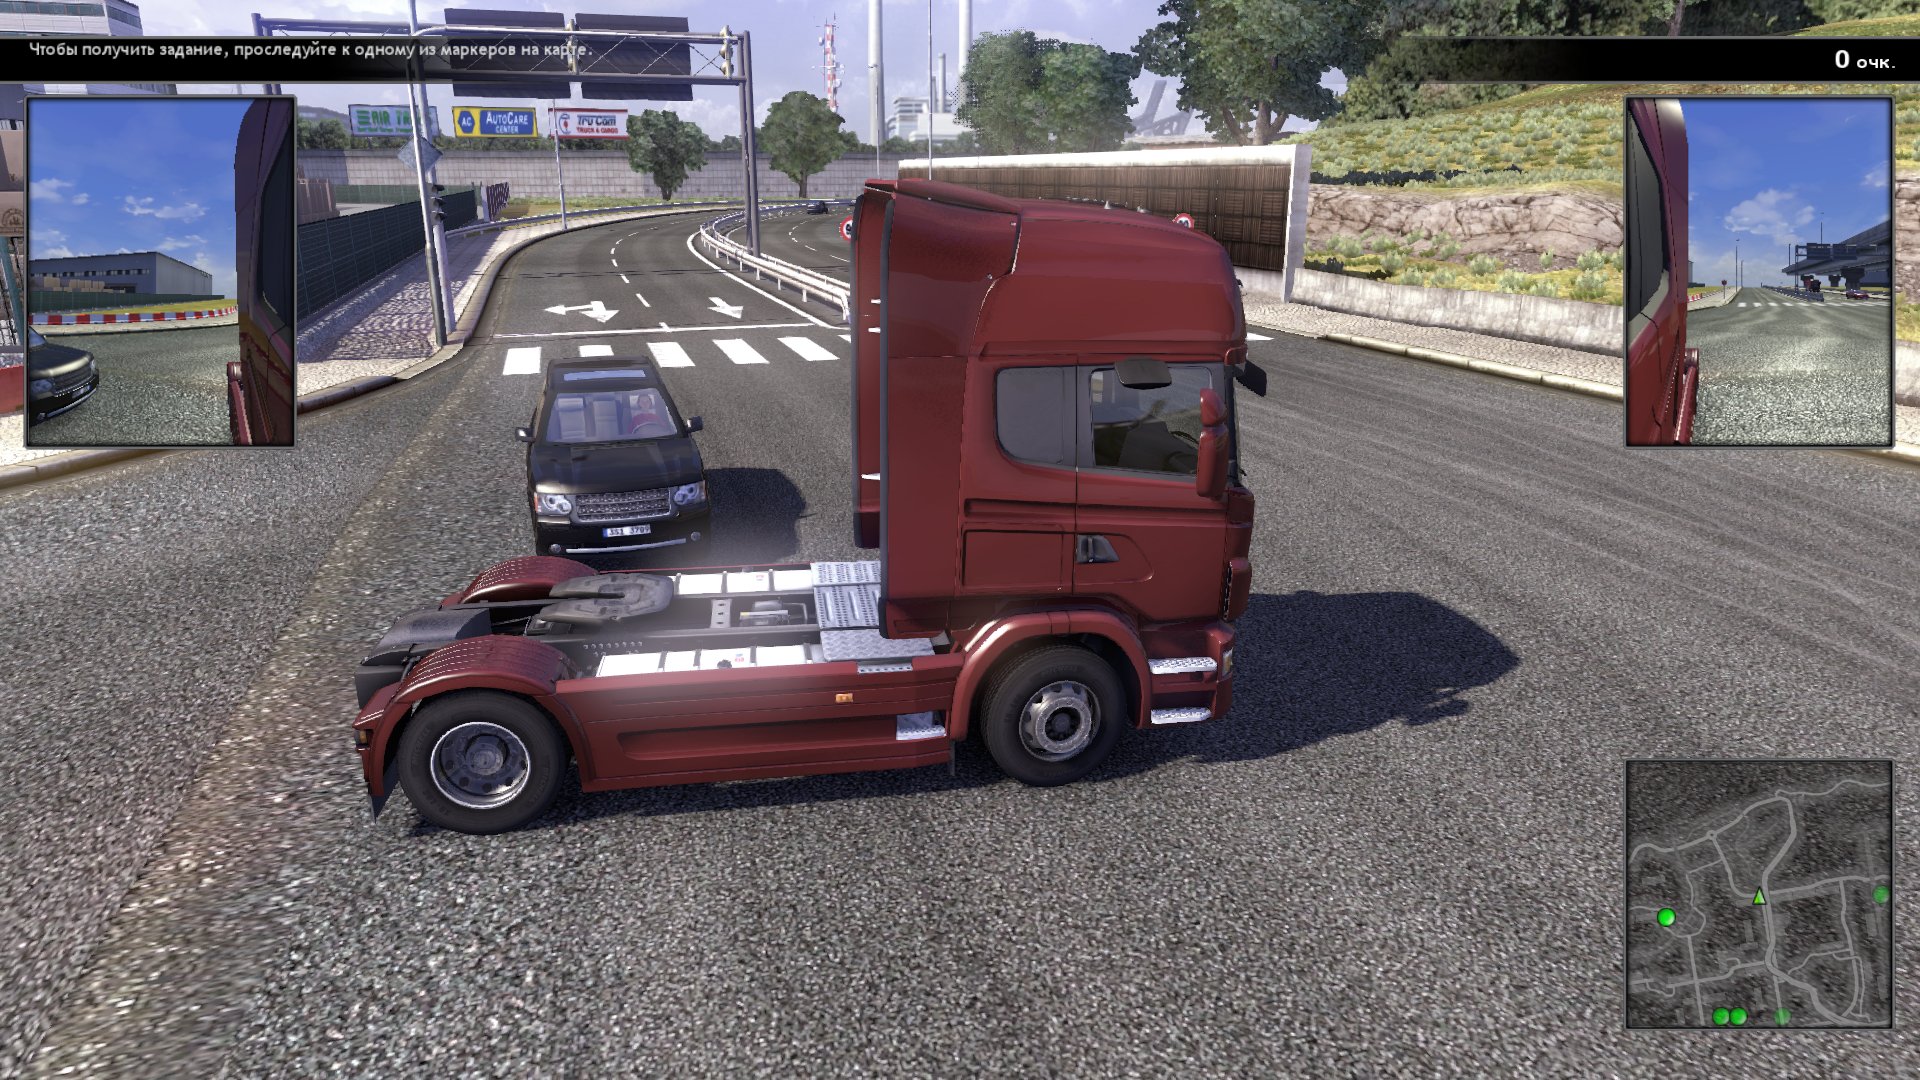 Игра симуляторы грузовые. Игра Scania Truck Driving Simulator. Скания трак драйв симулятор. Scania Truck Driving Simulator 2. Scania.Truck Driving Simulator.v 1.5.0.